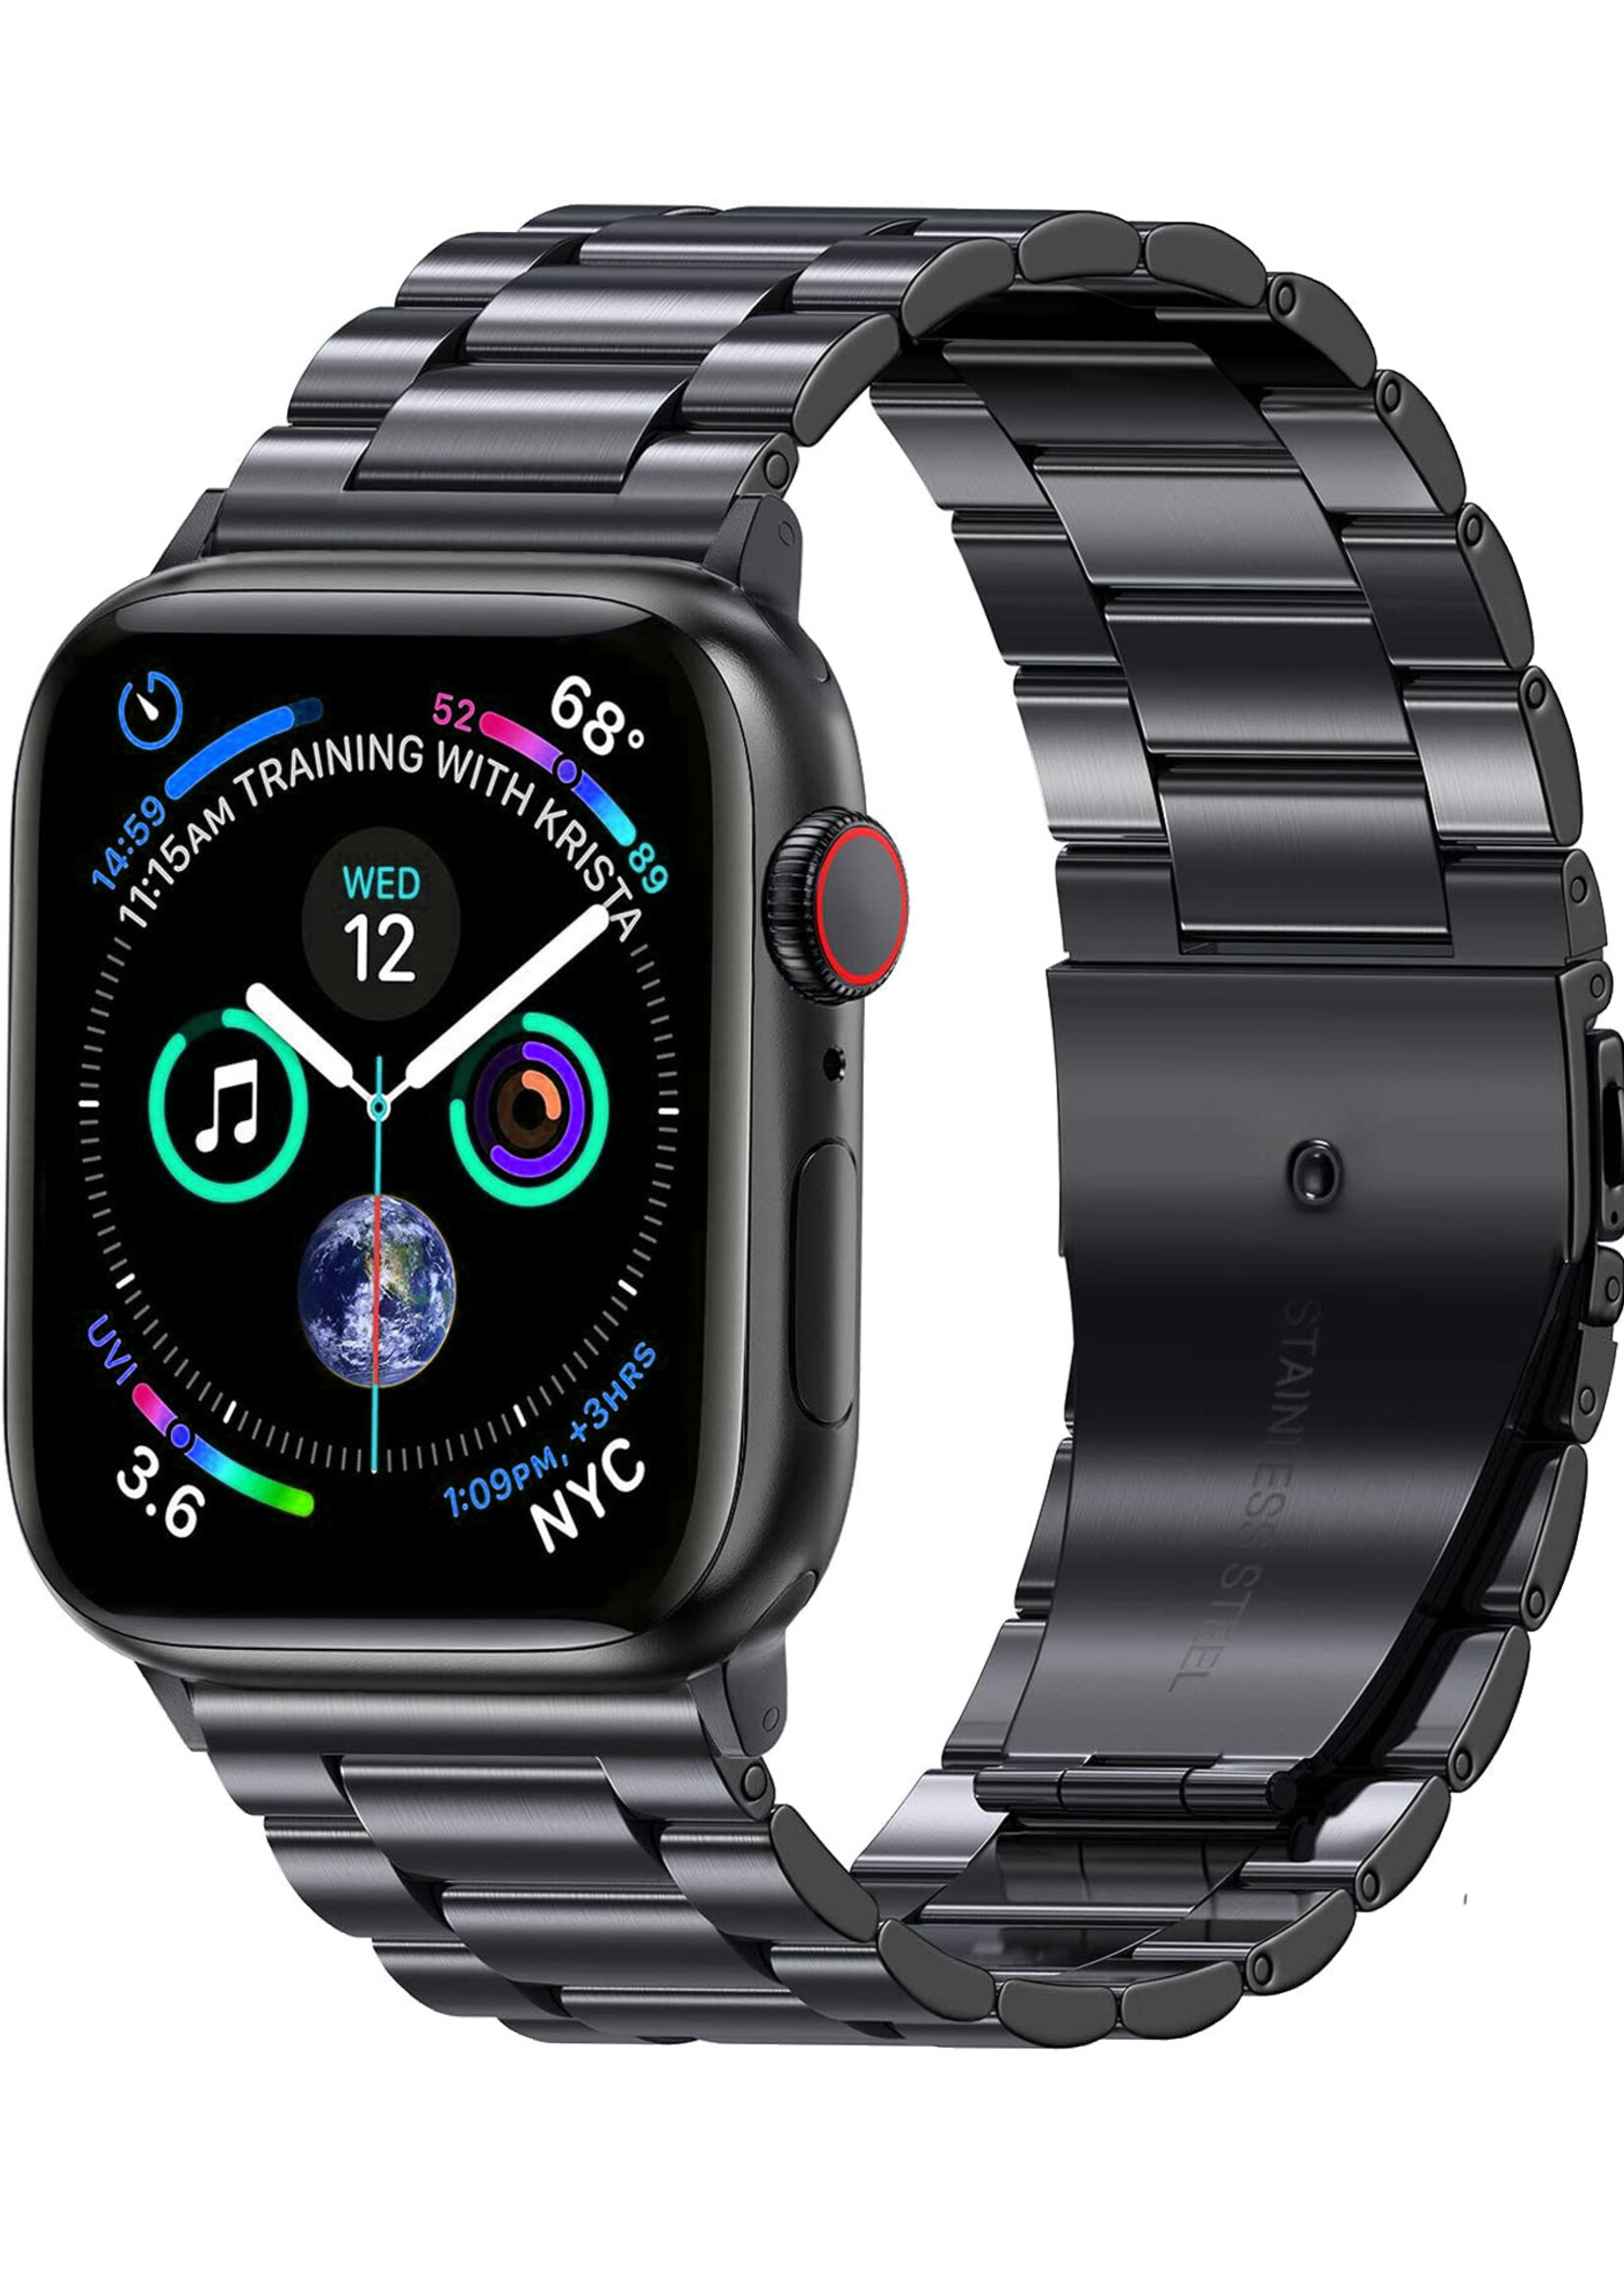 LUQ Horloge Bandje Geschikt Voor Apple Watch Bandje 38/40/41 mm Metaal Polsband - Bandje Geschikt Voor Apple Watch 1-8 / SE (38/40/41 mm) Bandje Metaal - Zwart